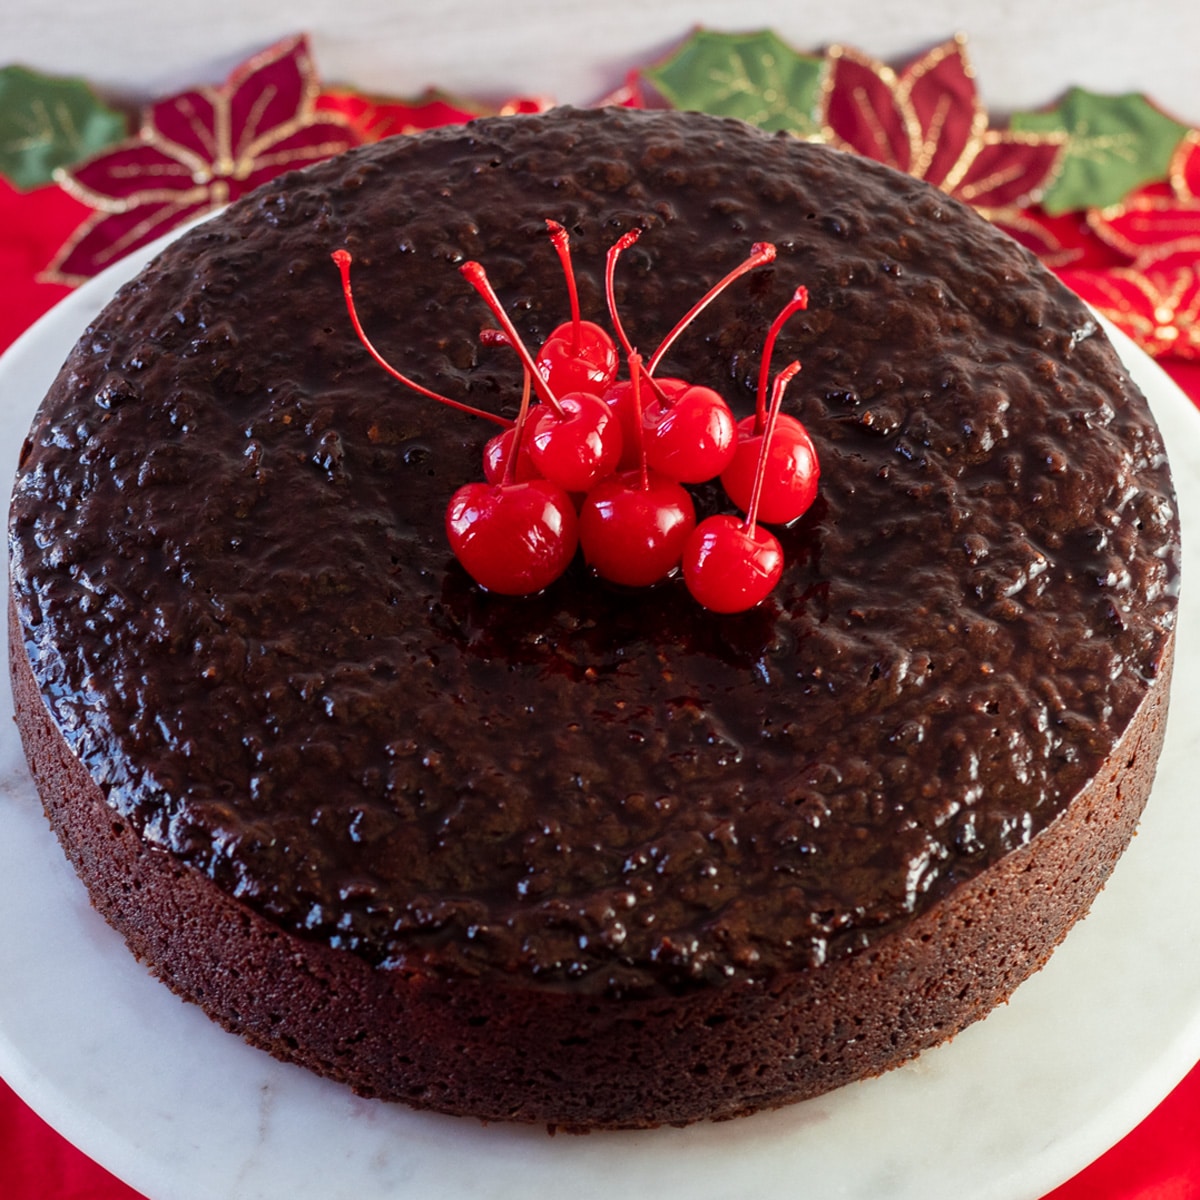 Imagem quadrada olhando para o bolo preto jamaicano, com cerejas em cima do bolo.